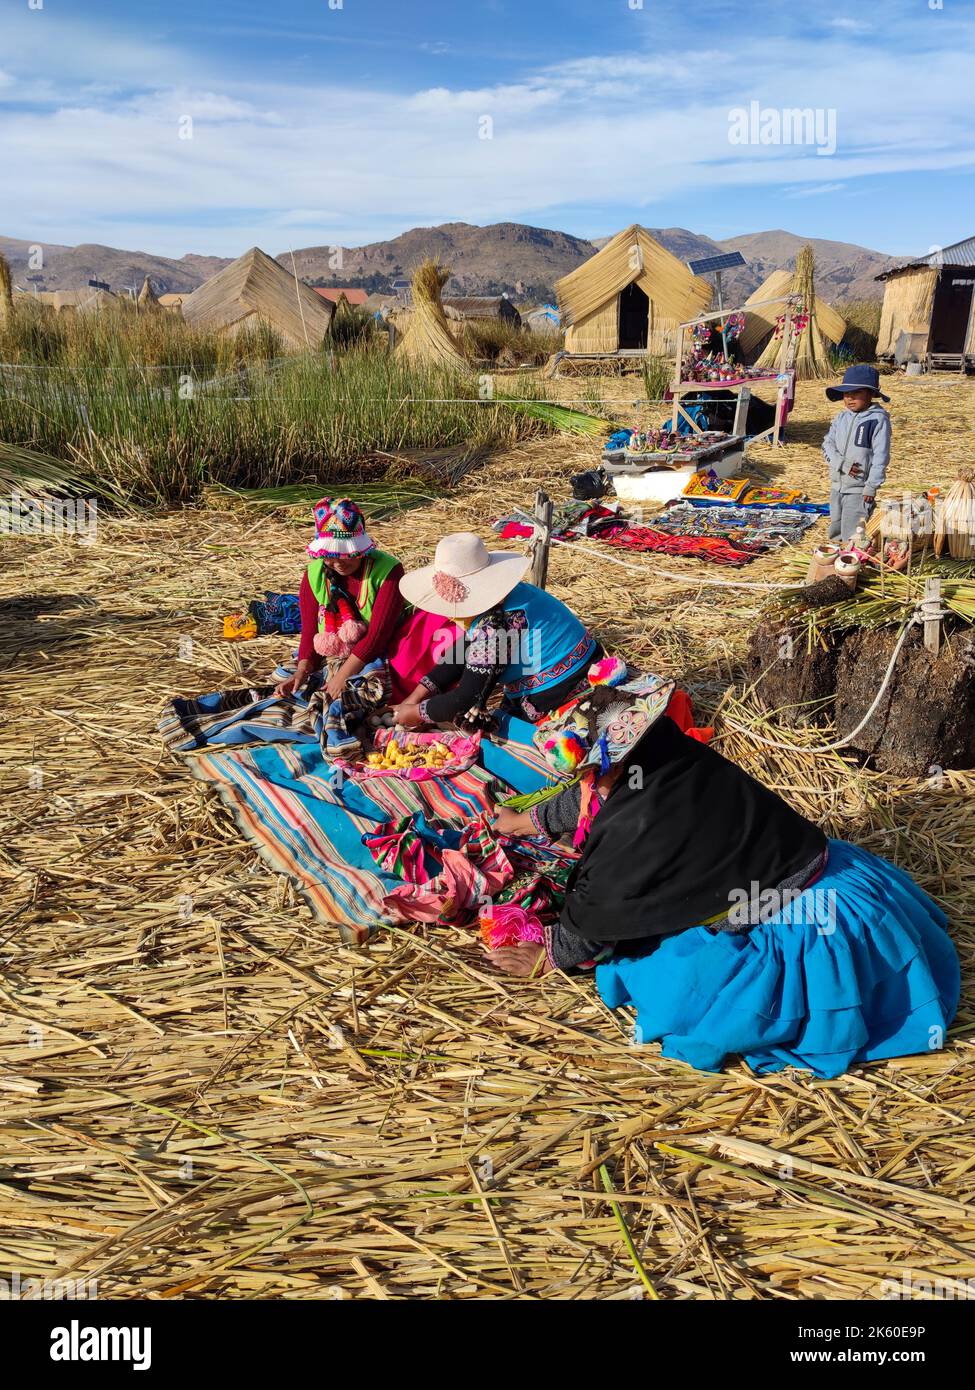 Donne degli Uru o Uros, indigeni del Perù e della Bolivia, mentre lavorano con pezzi di stoffa sulla loro isola galleggiante nel lago Titicaca. Foto Stock